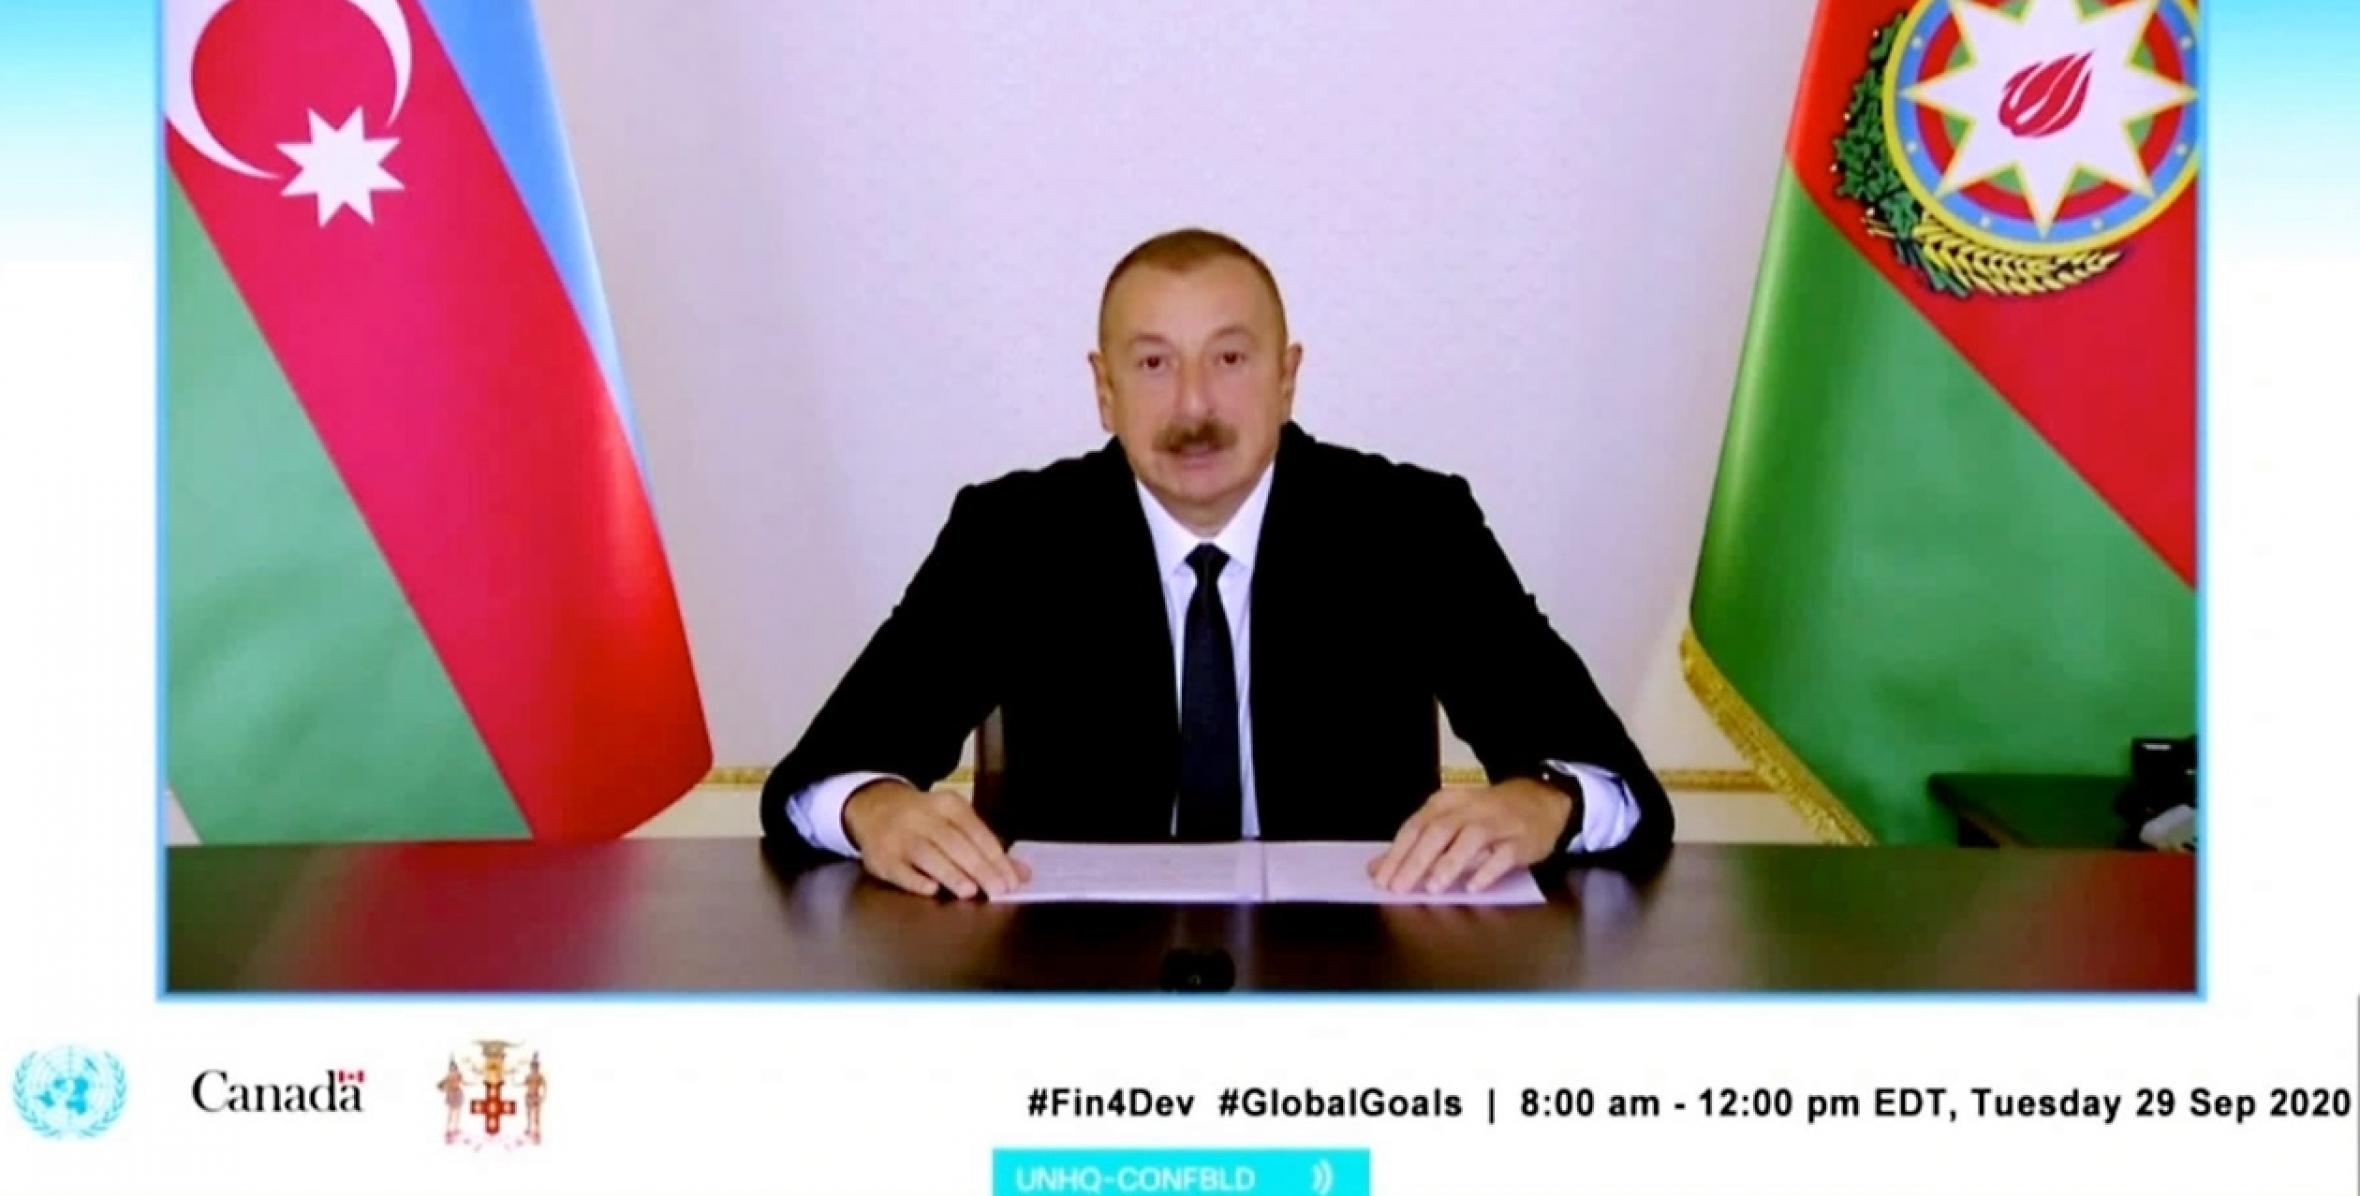 Ильхам Алиев выступил в видеоформате на заседании глав государств и правительств на тему «Финансирование Повестки дня в области Целей устойчивого развития на период до 2030 года во время COVID-19 и в последующий период»